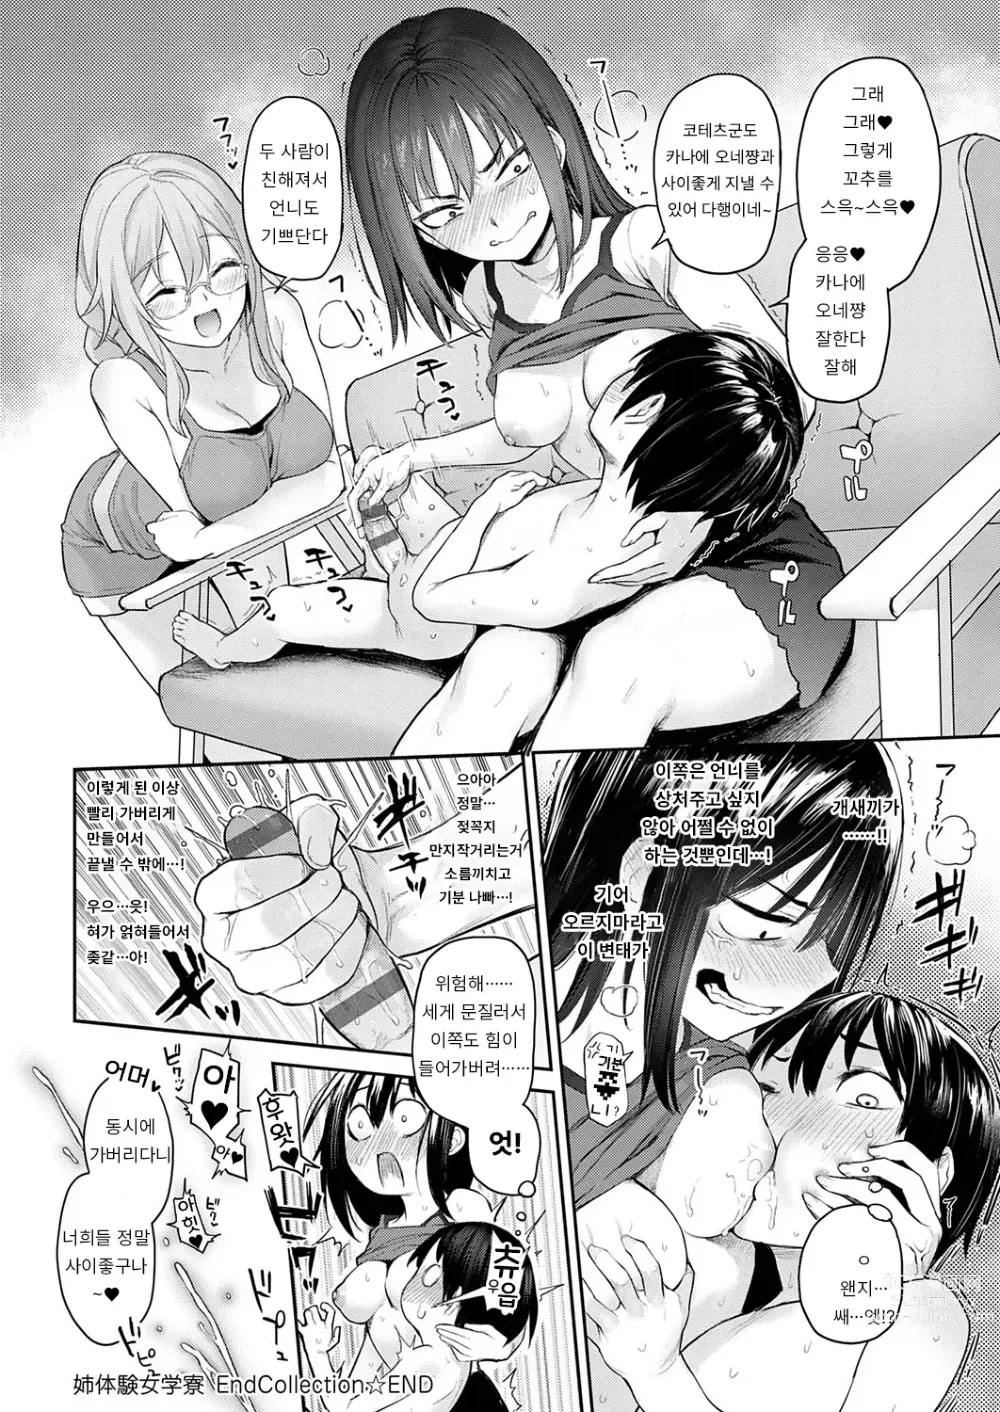 Page 21 of manga Ane Taiken Jogakuryou End Collection